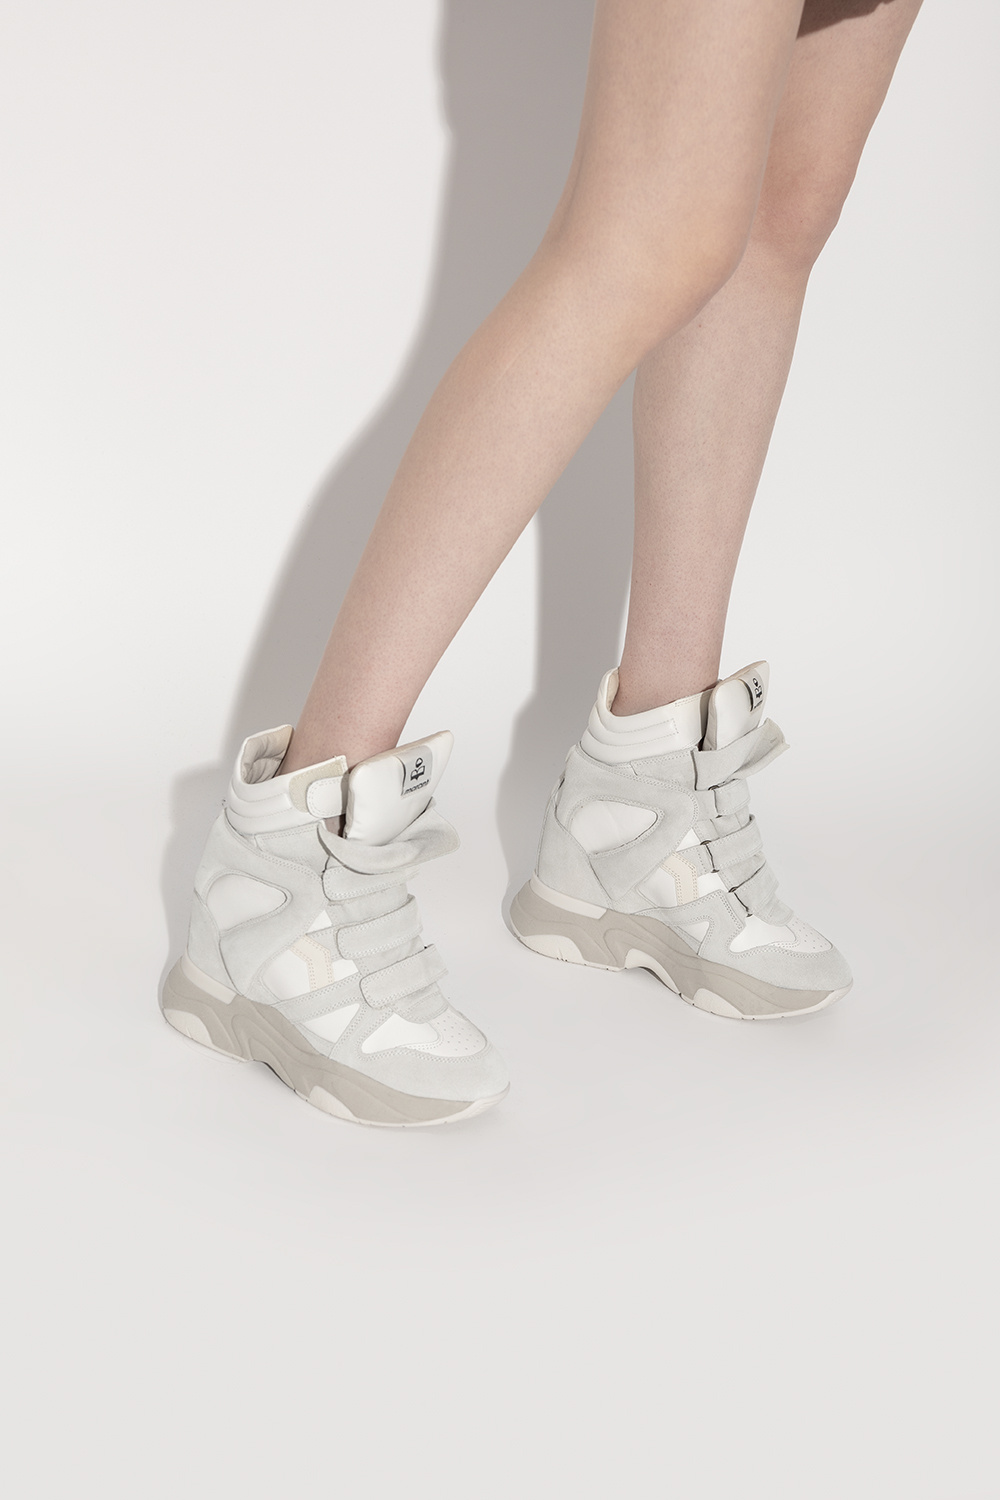 Grey ‘Balskee’ wedge shoes Isabel Marant - Vitkac GB